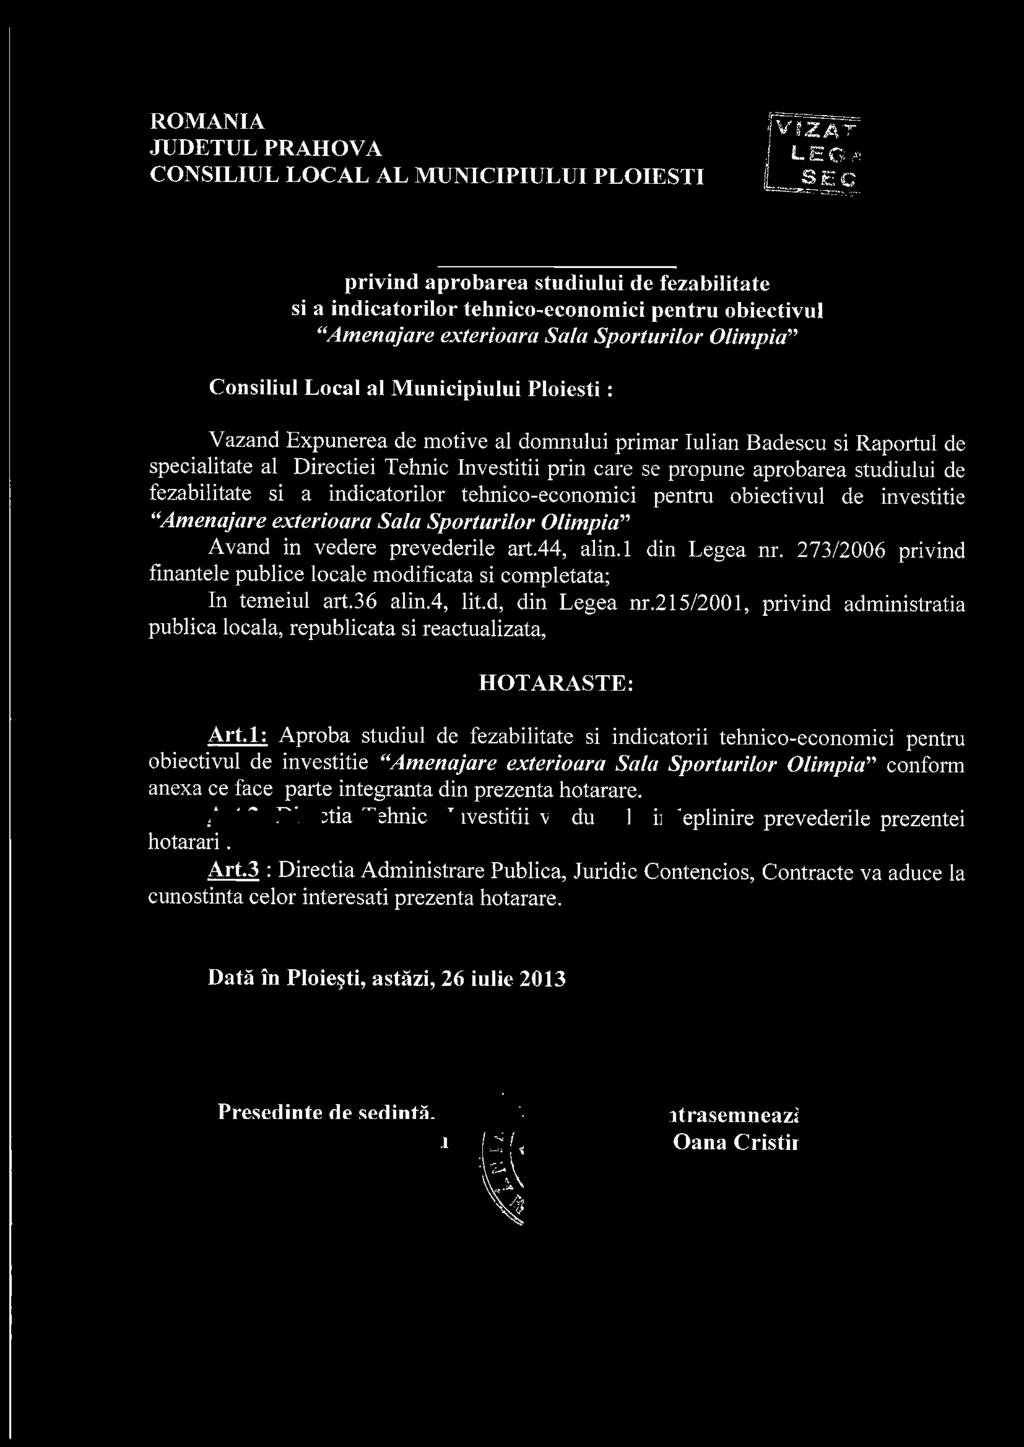 al Municipiului Ploiesti : Vazand Expunerea de motive al domnului primar Iulian Badescu si Raportul de specialitate al Directiei Tehnic Investitii prin care se propune